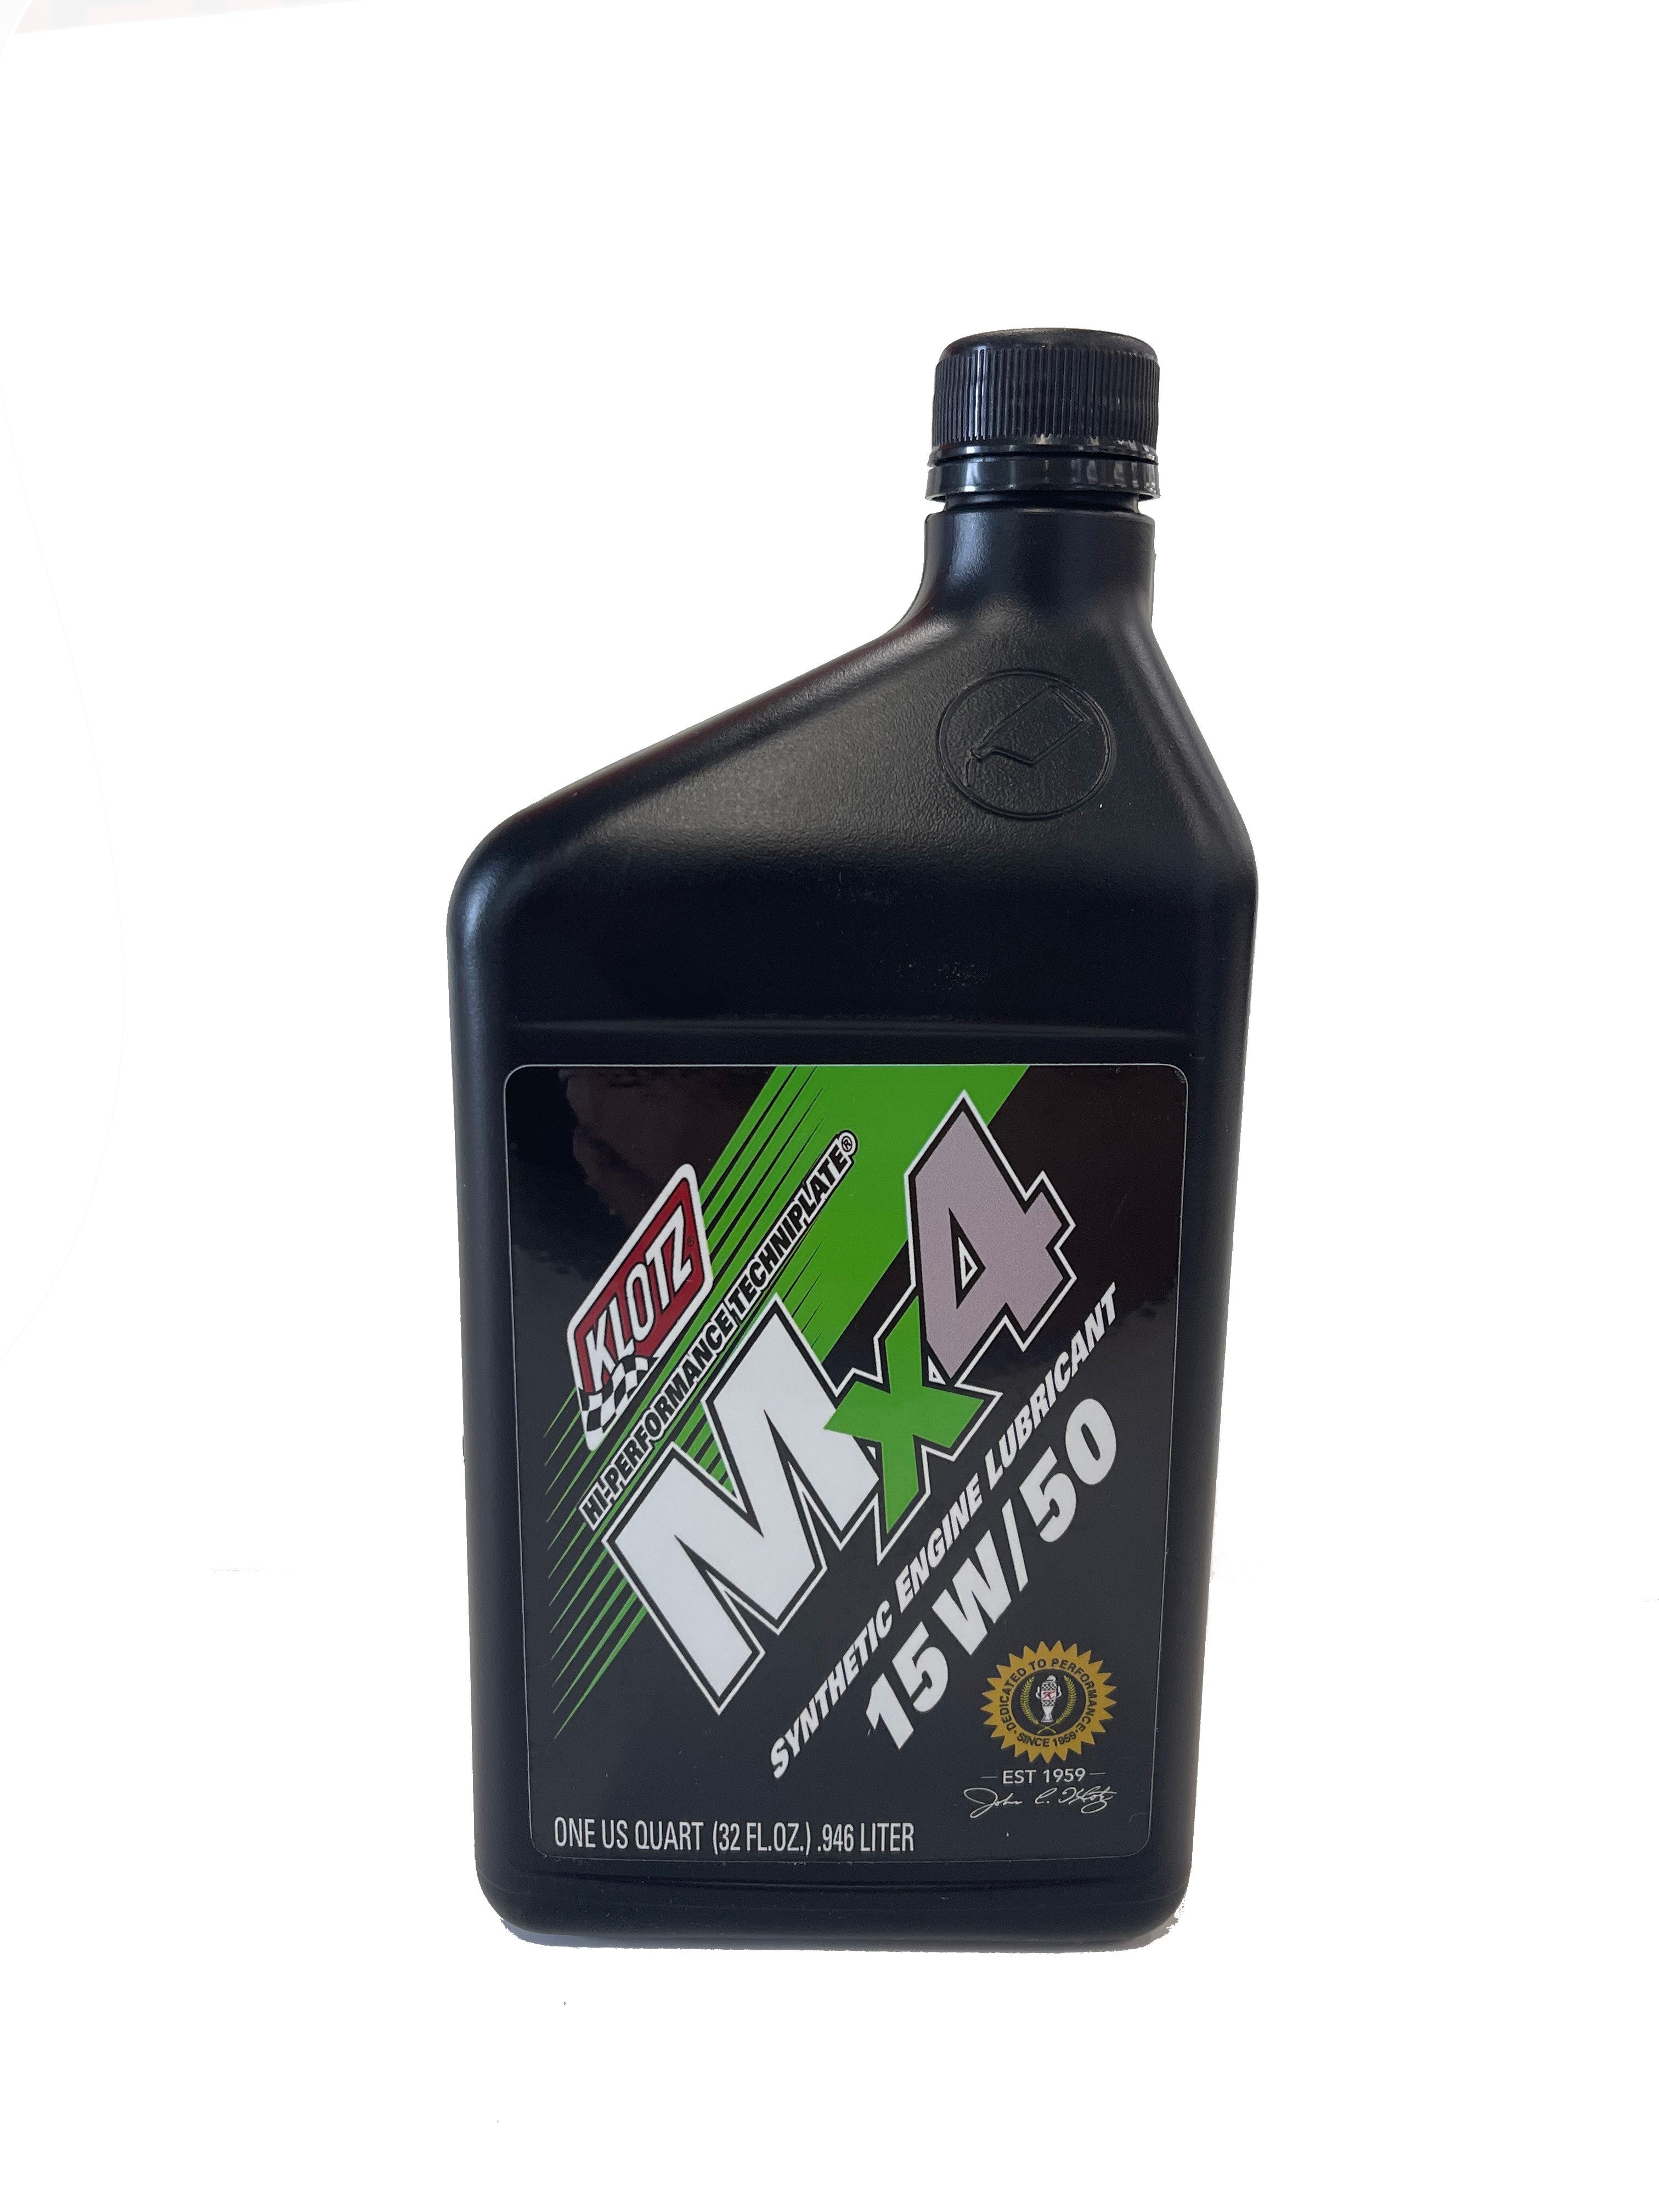 Klotz Mx4 15w/50 Synthetic Oil